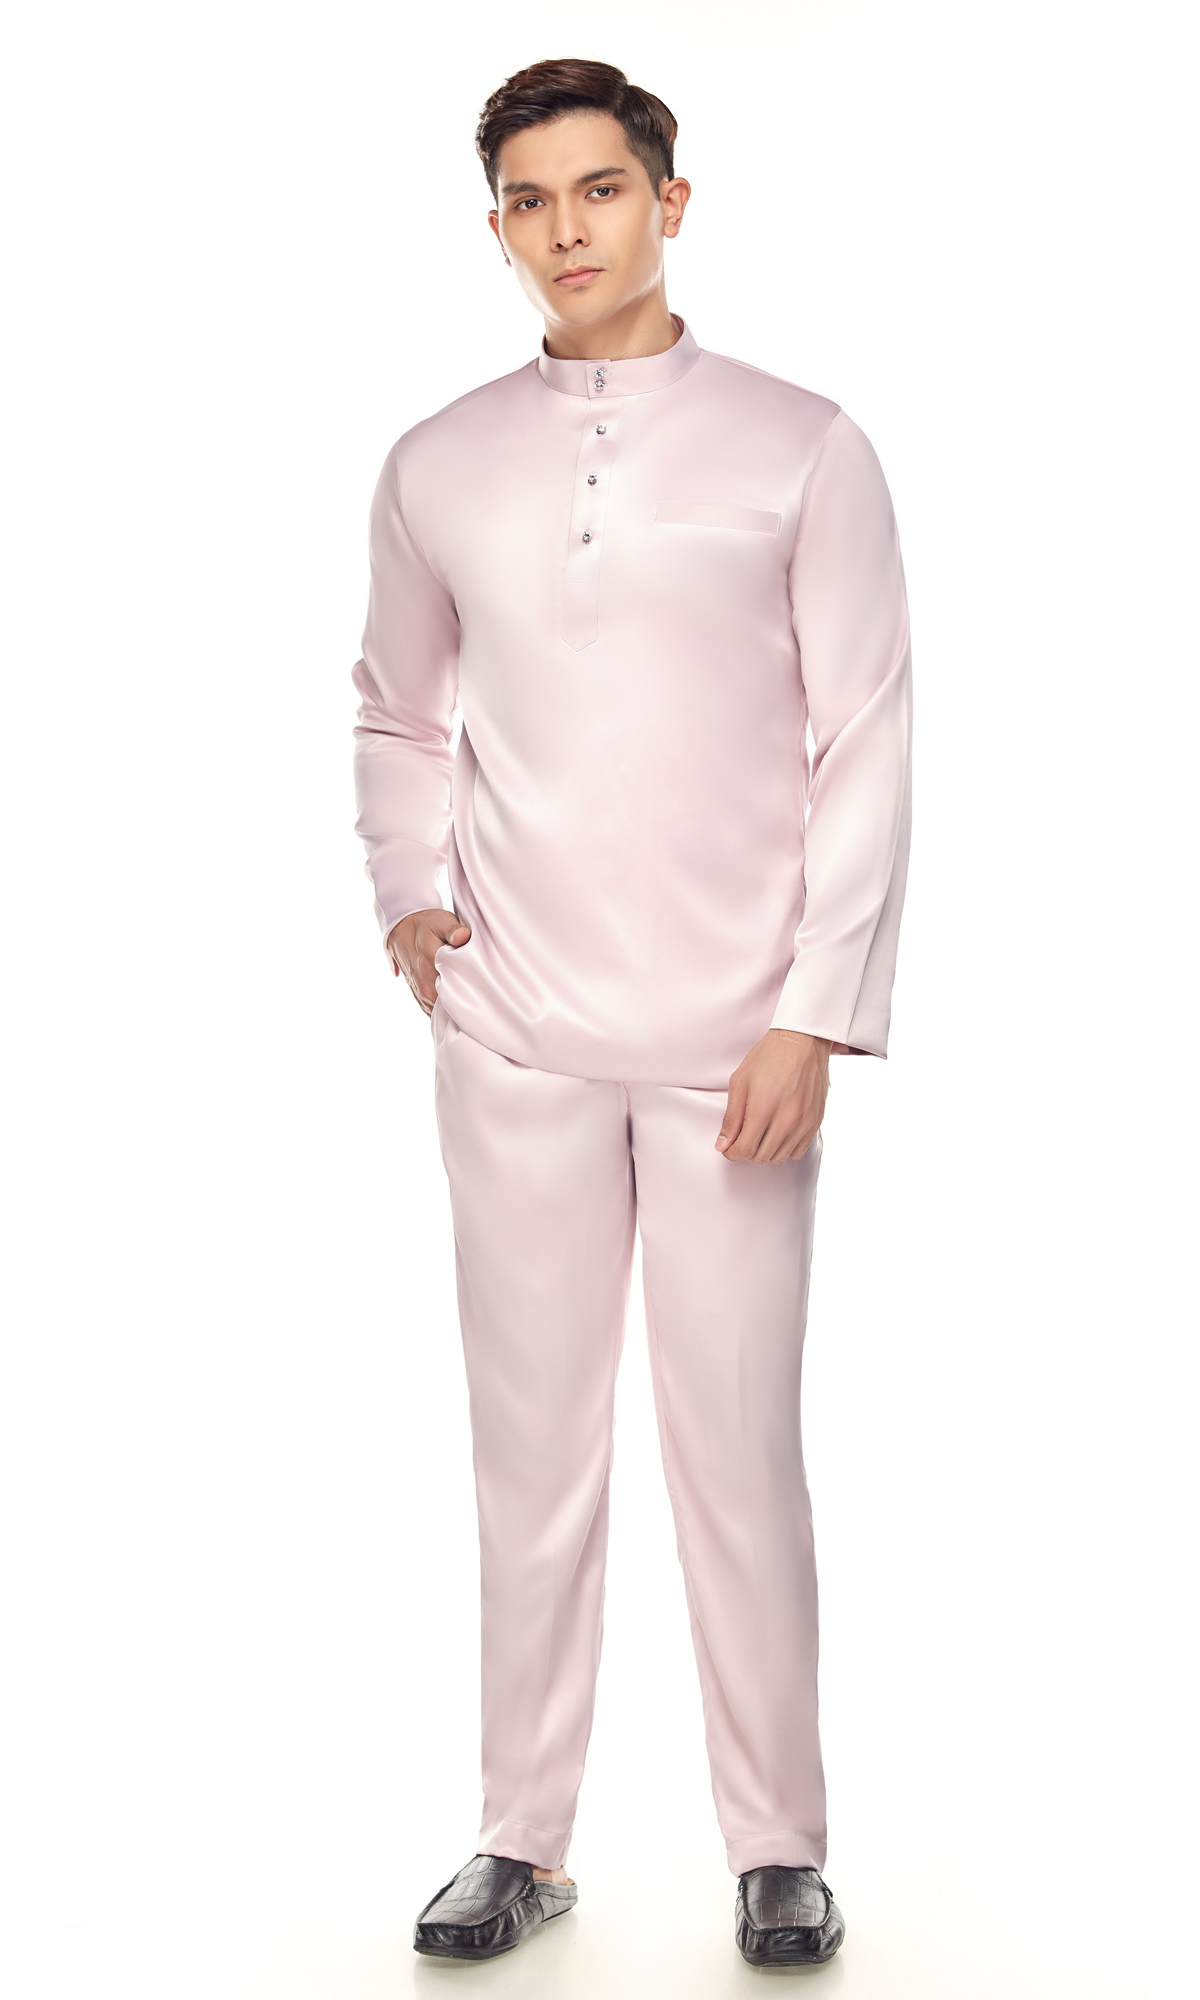 Mizan Baju Melayu in Pastel Pink